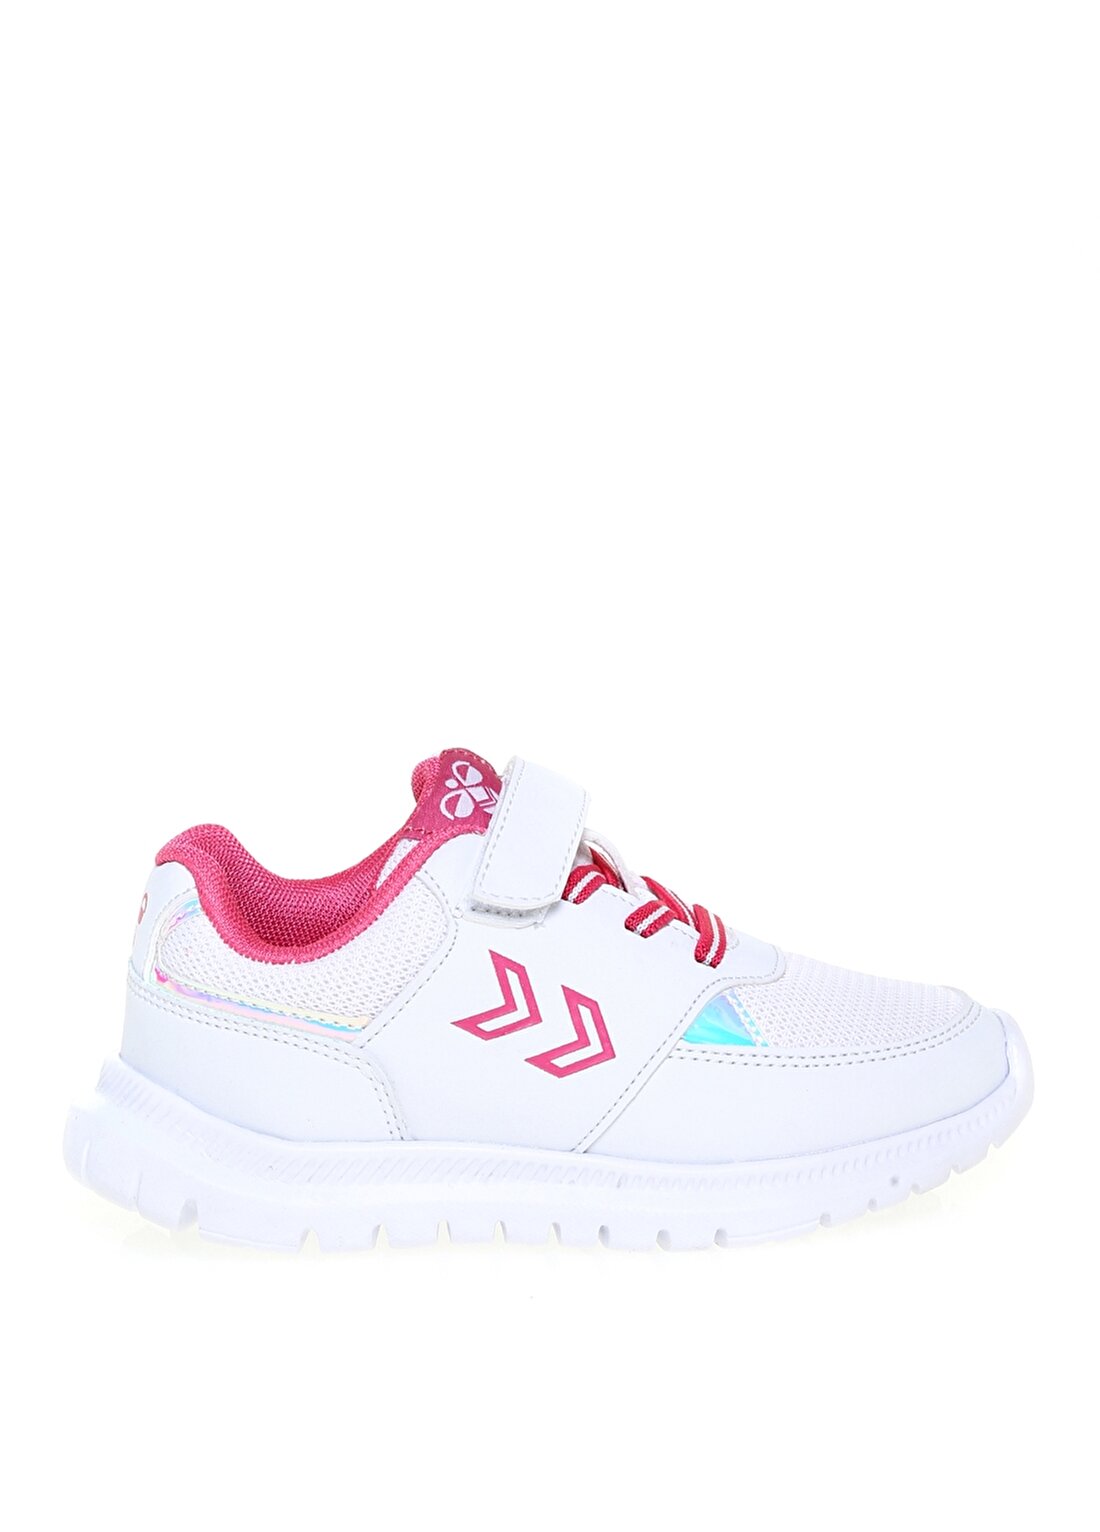 Hummel CASPER Beyaz - Pembe Kız Çocuk Yürüyüş Ayakkabısı 212667-9144